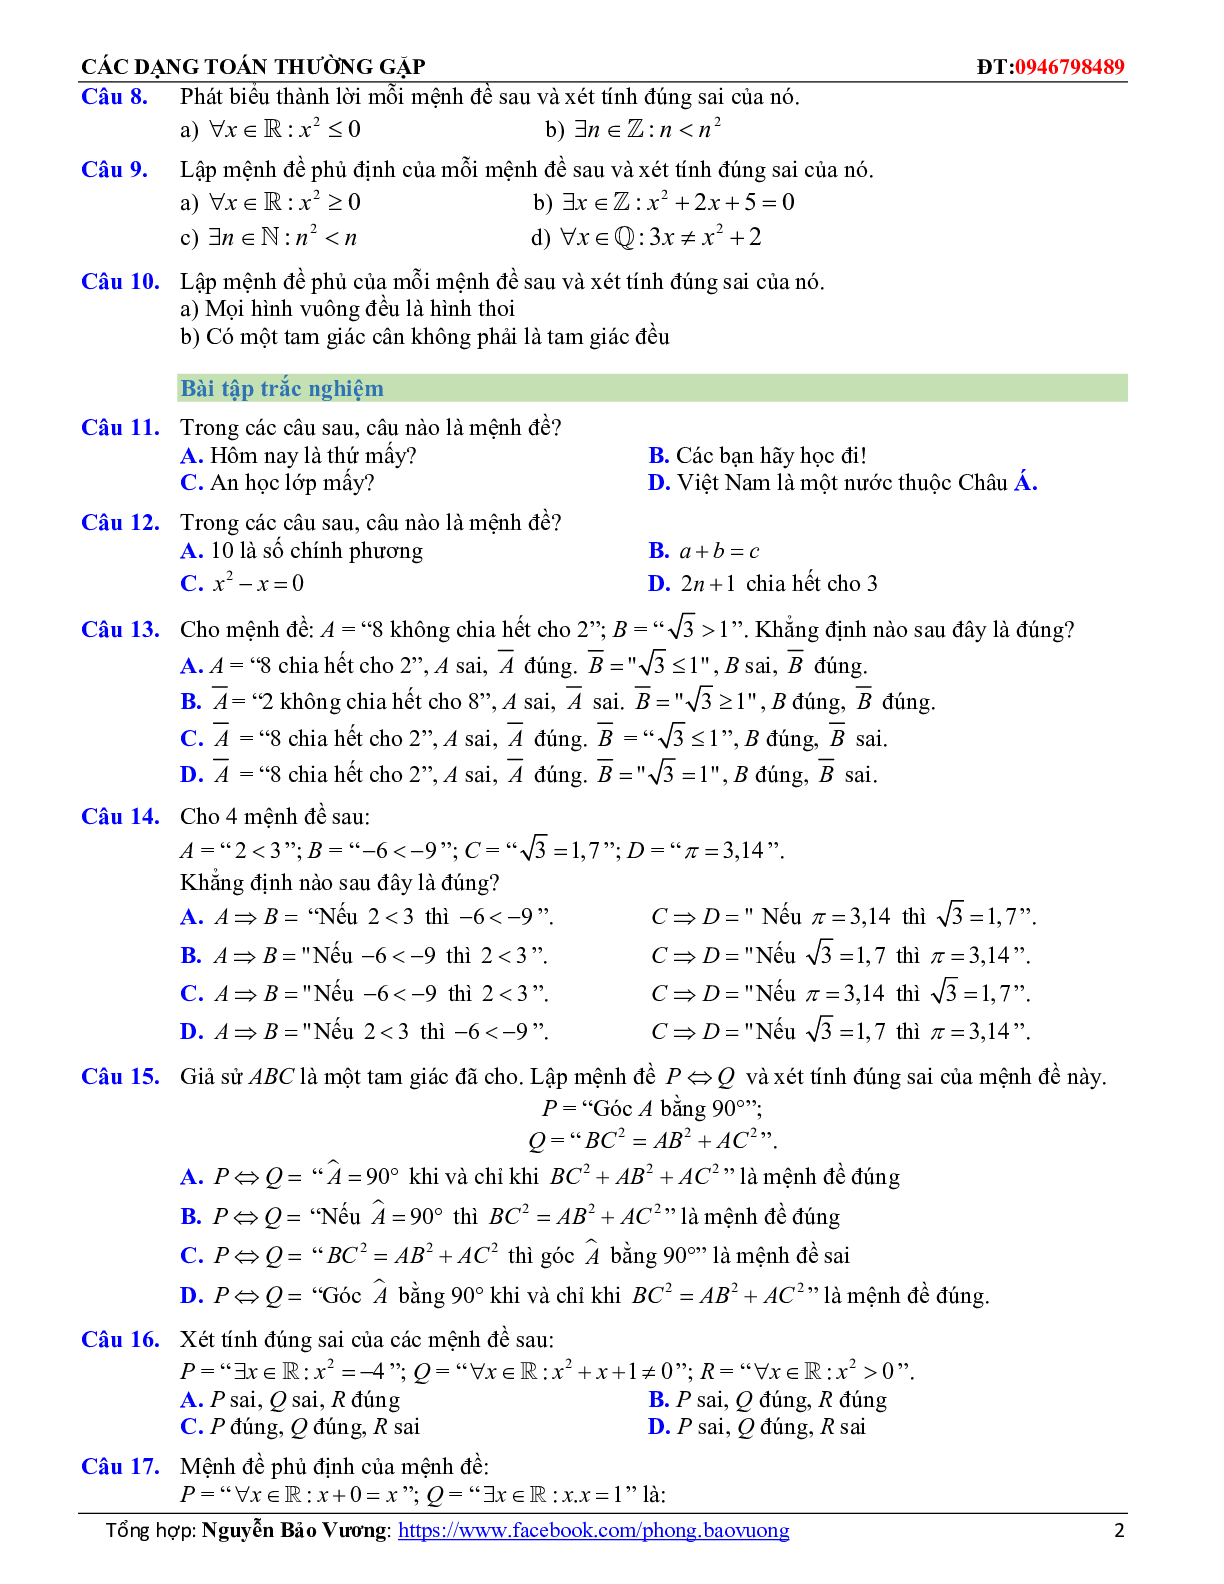 Các dạng toán mệnh đề và tập hợp thường gặp (trang 3)